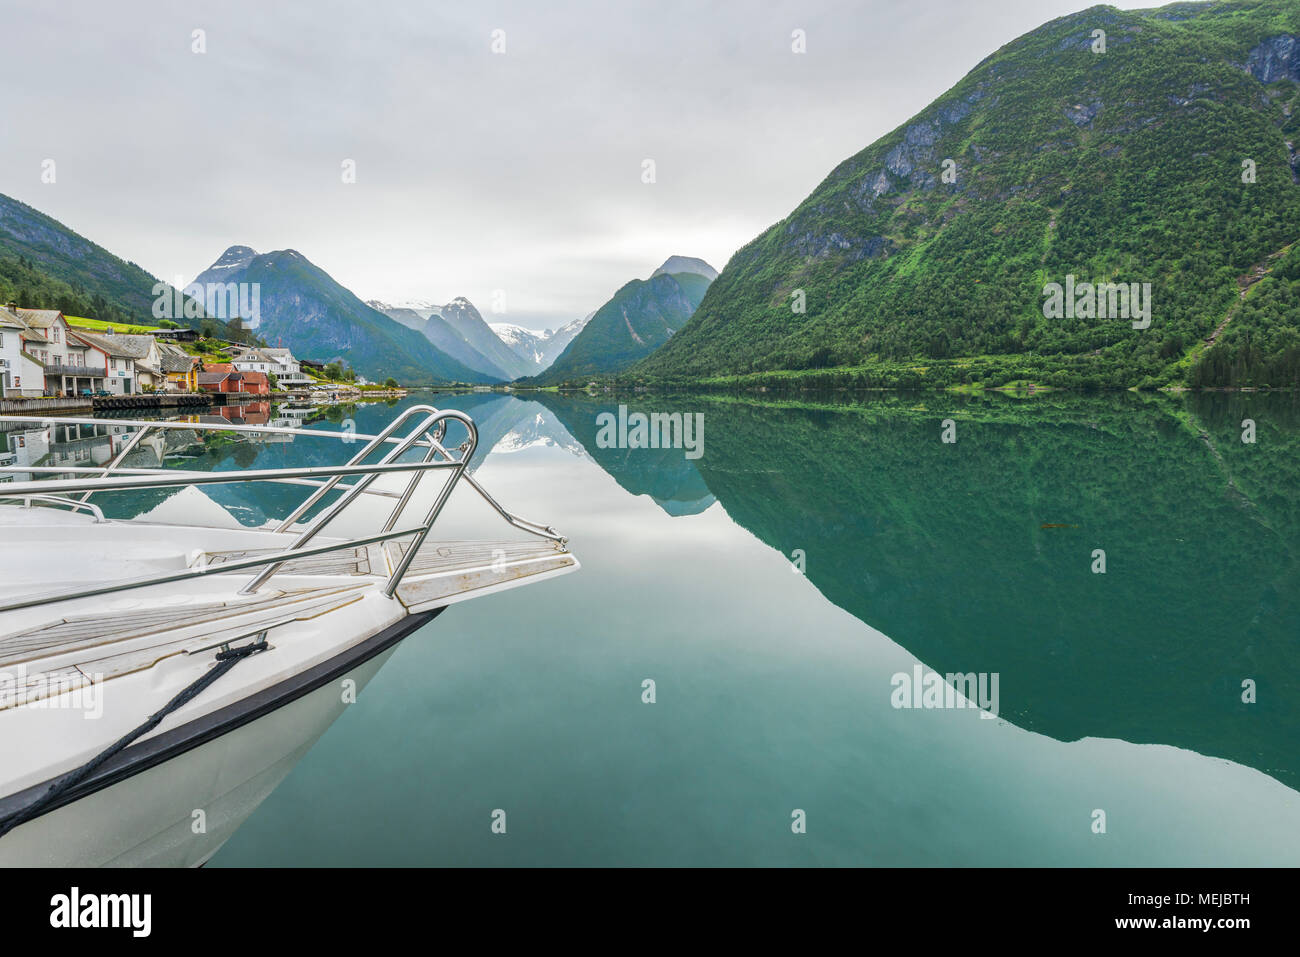 Spiegelung in der mundal, Fjaerlandsfjorden in Norwegen, Fjord und Berge mit Boot, Gemeinde Sogndal, Sogn og Fjordane county Stockfoto